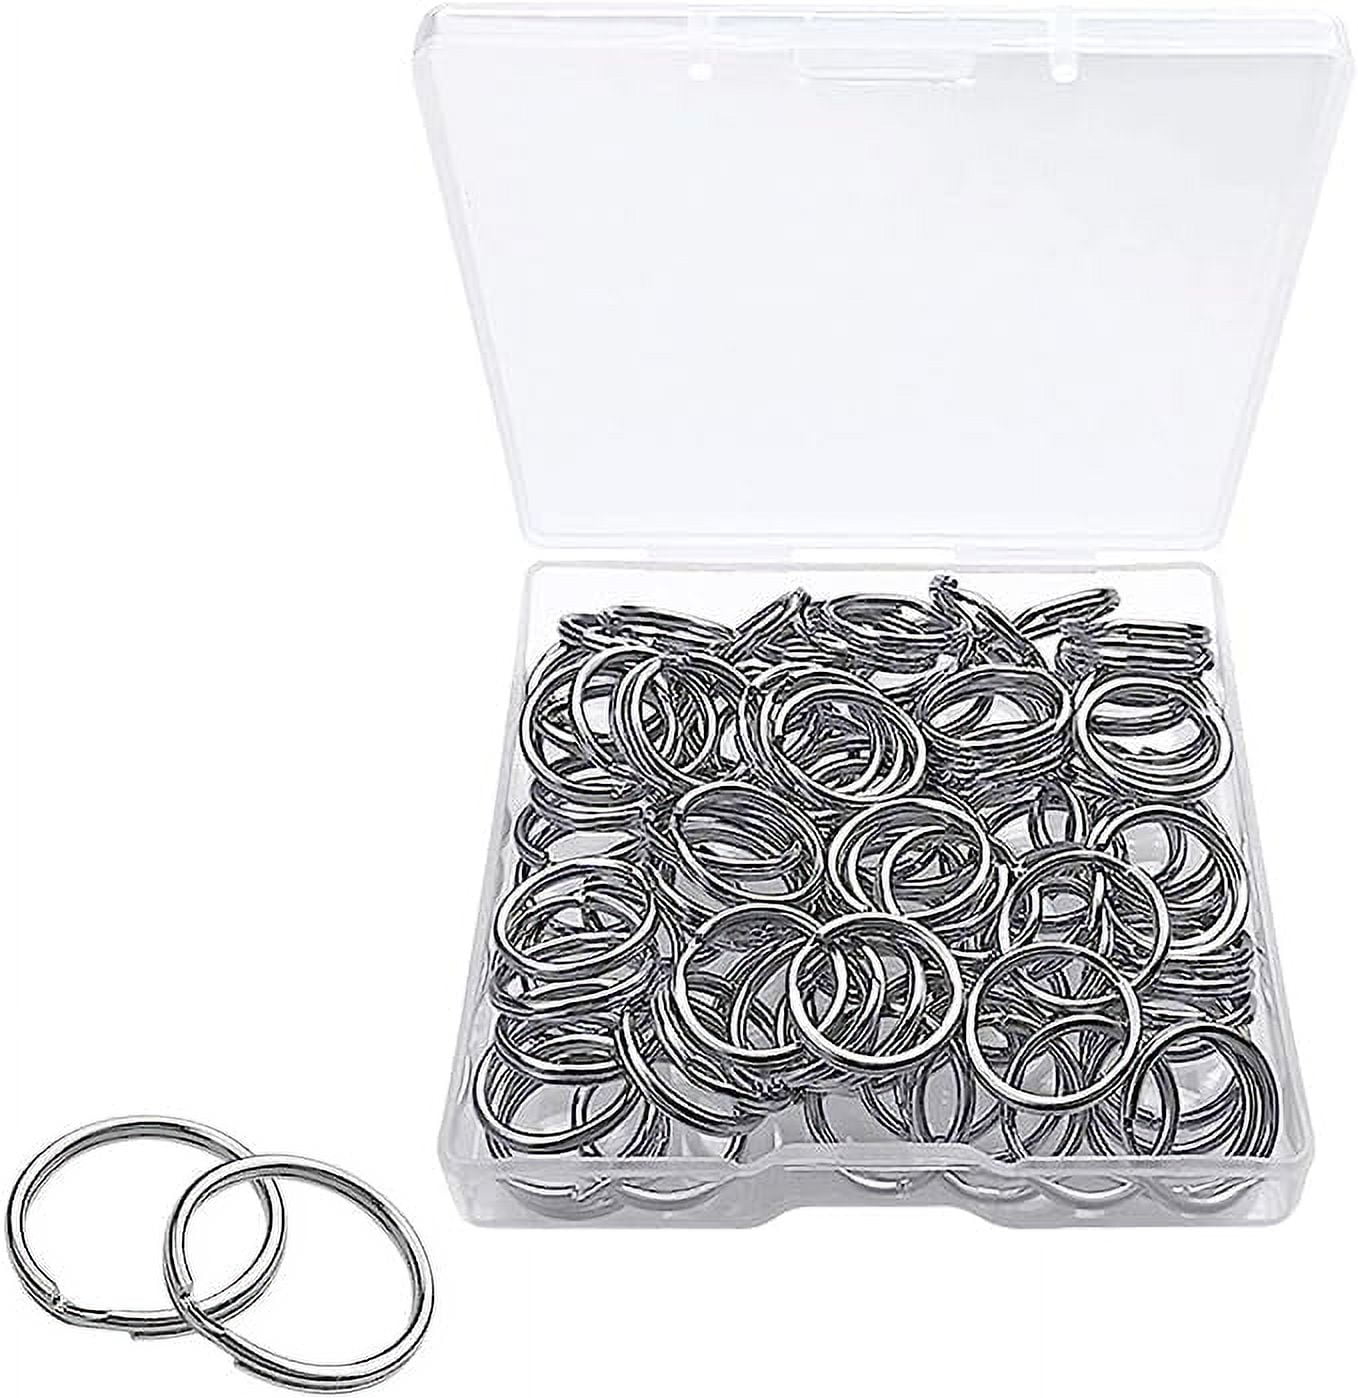 100 pcs Silver Nickel Plated Steel 7/8 Split Key Rings Jewelry